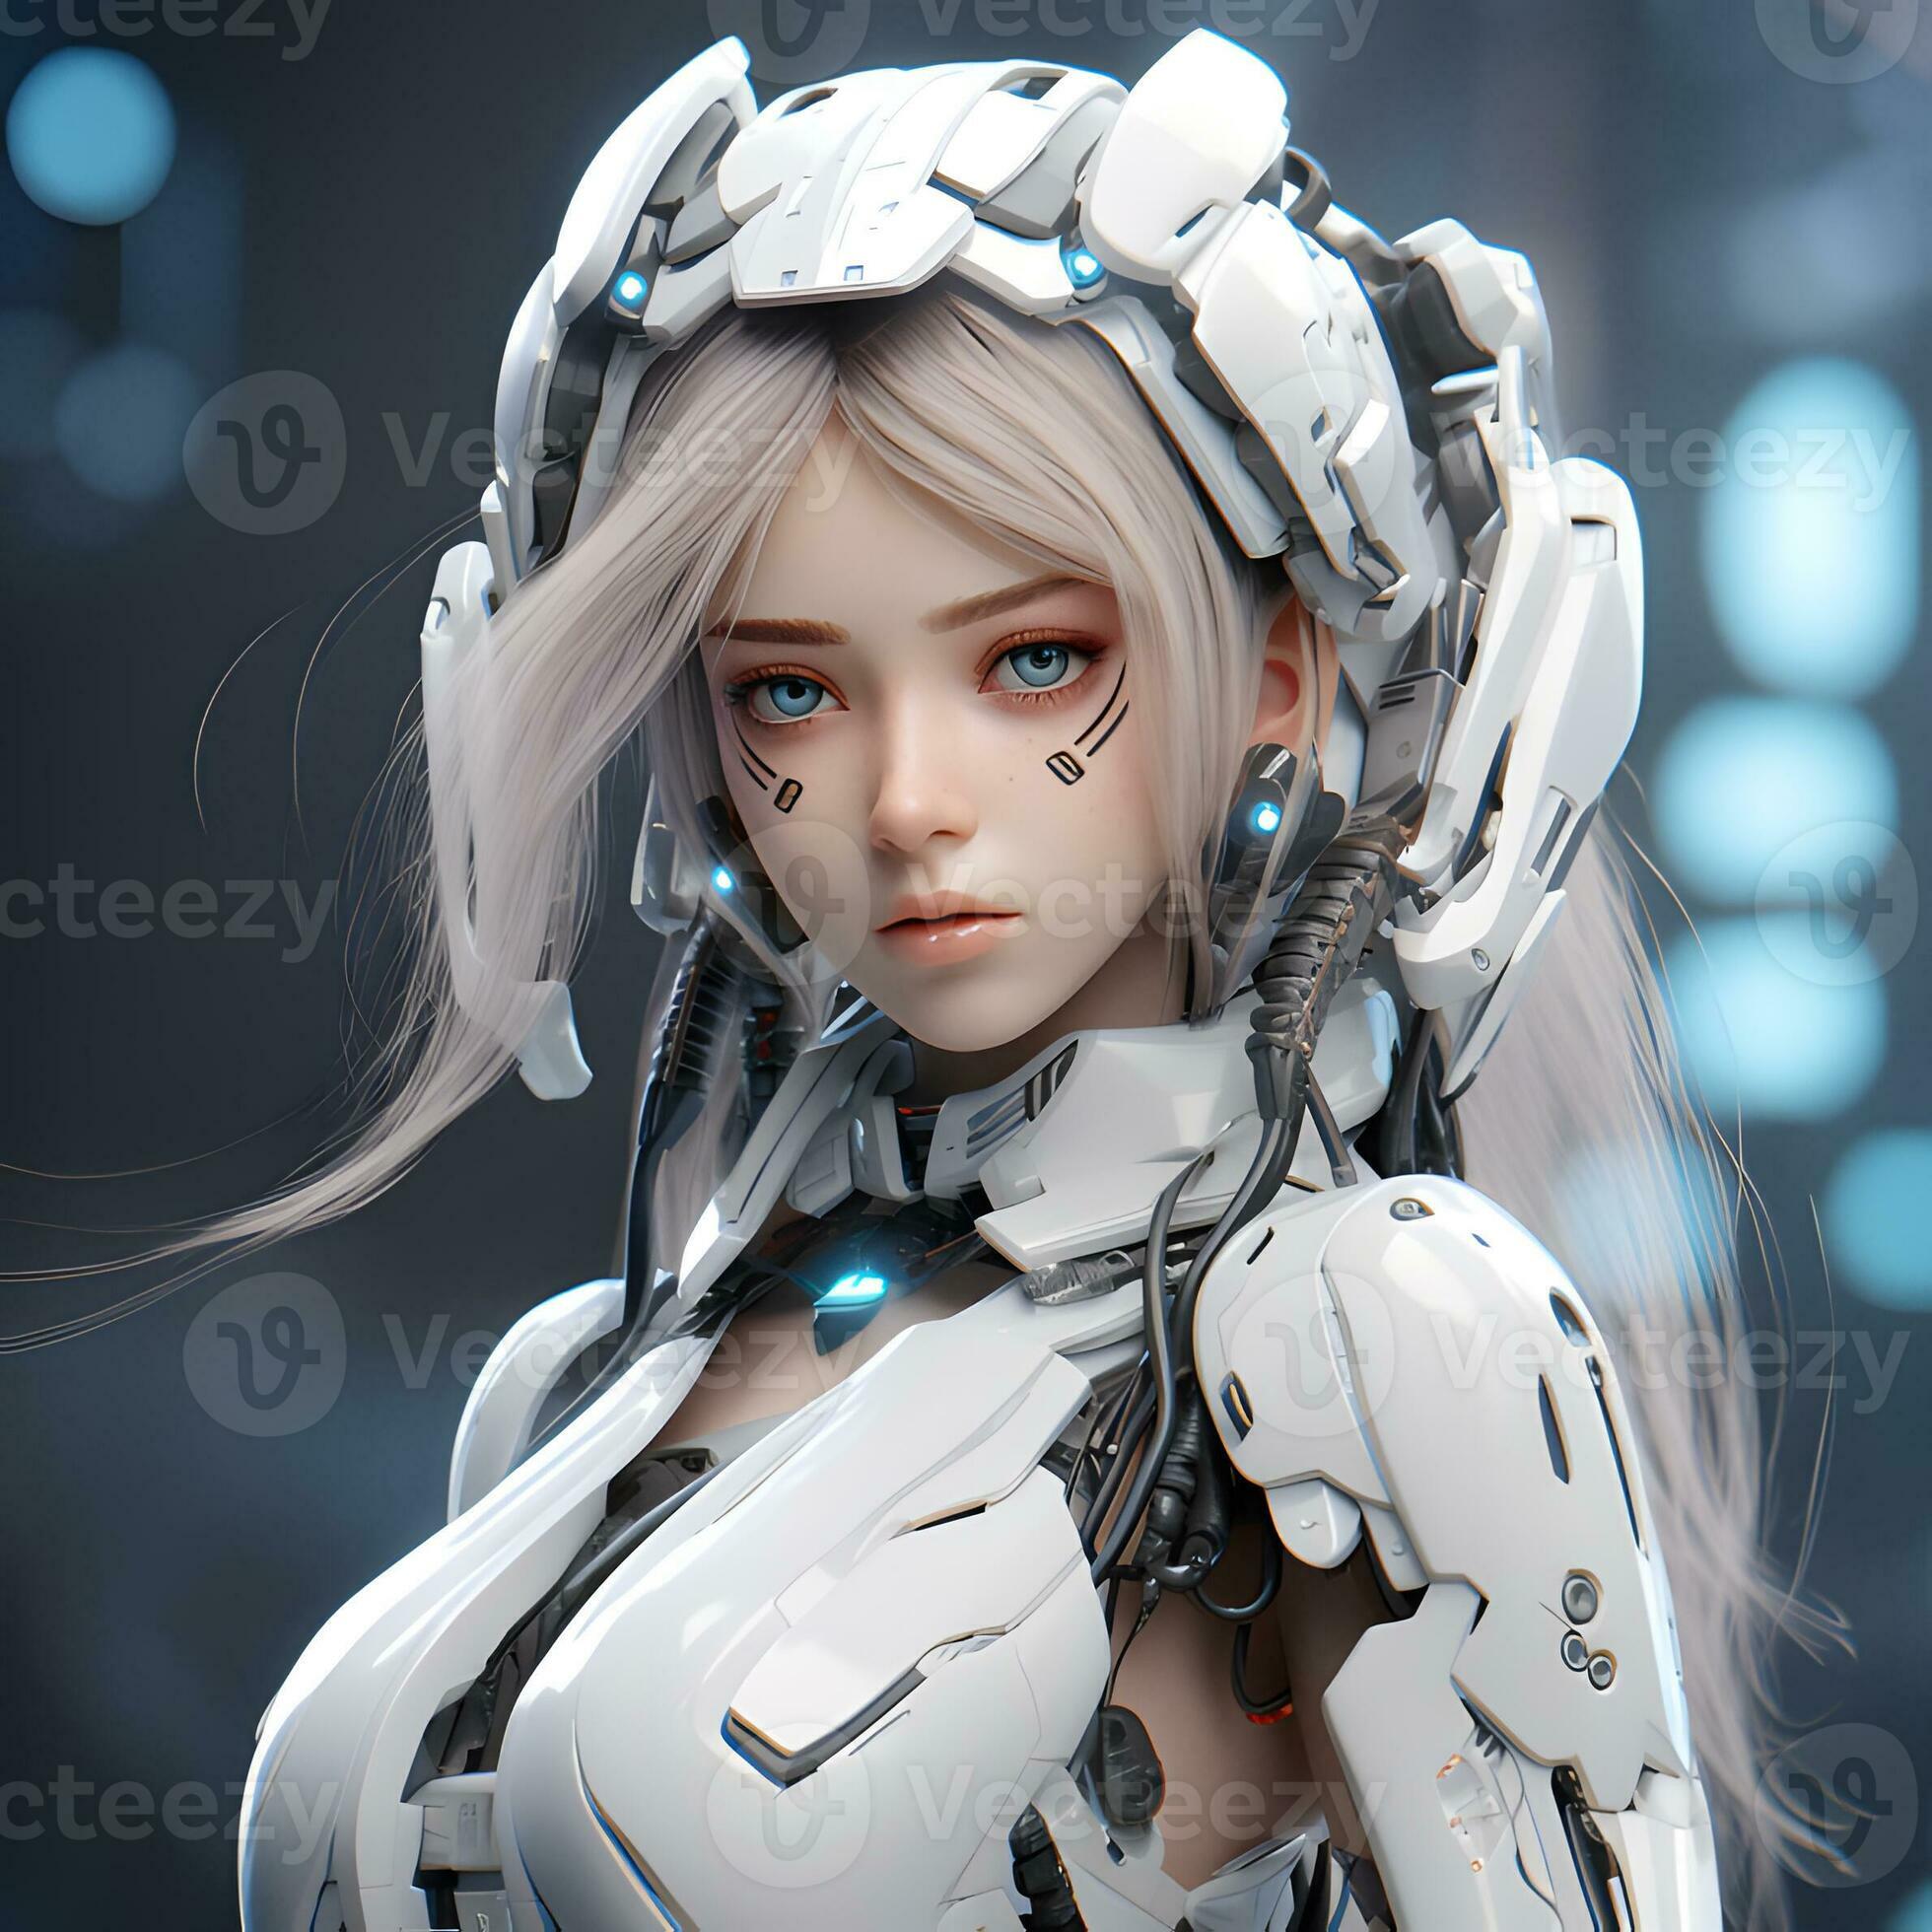 Robot Girl (medabots, frea, general mecha musume) - v1.0 Showcase